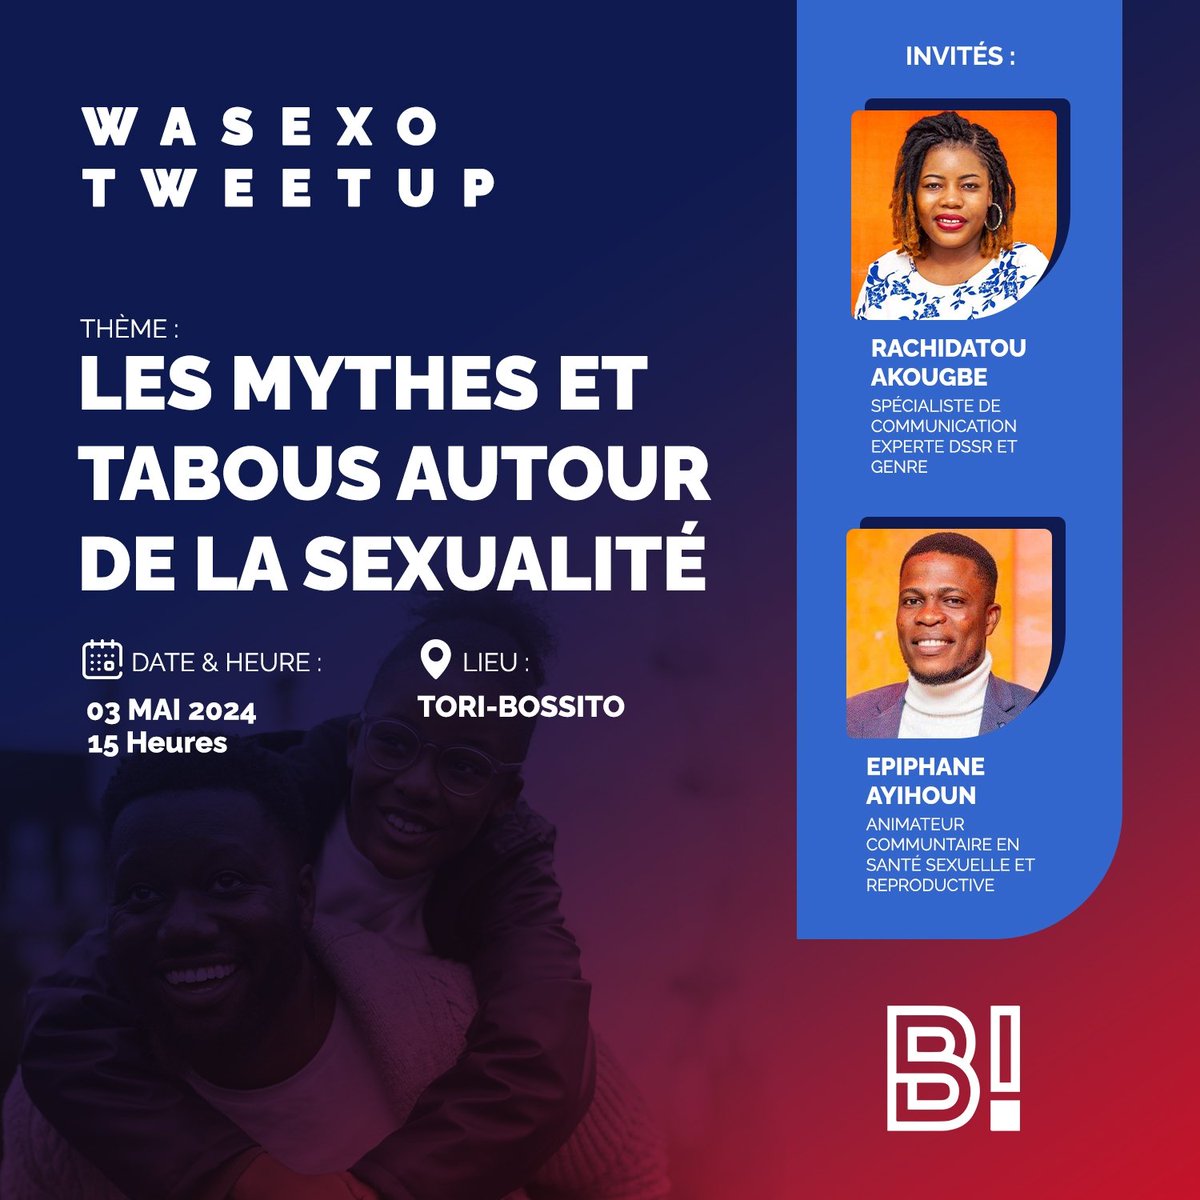 📢🔥 Participez à notre prochain Wasexo #TweetUp sur les tabous sexuels ! 

Rejoignez la discussion animée par Rachidatou AKOUGBE  et Epiphane AYIHOUN sur les sujets parfois délicats mais importants liés à la sexualité. 

C'est ce 3️⃣ Mai 2024 à 15h à la maison des jeunes de…